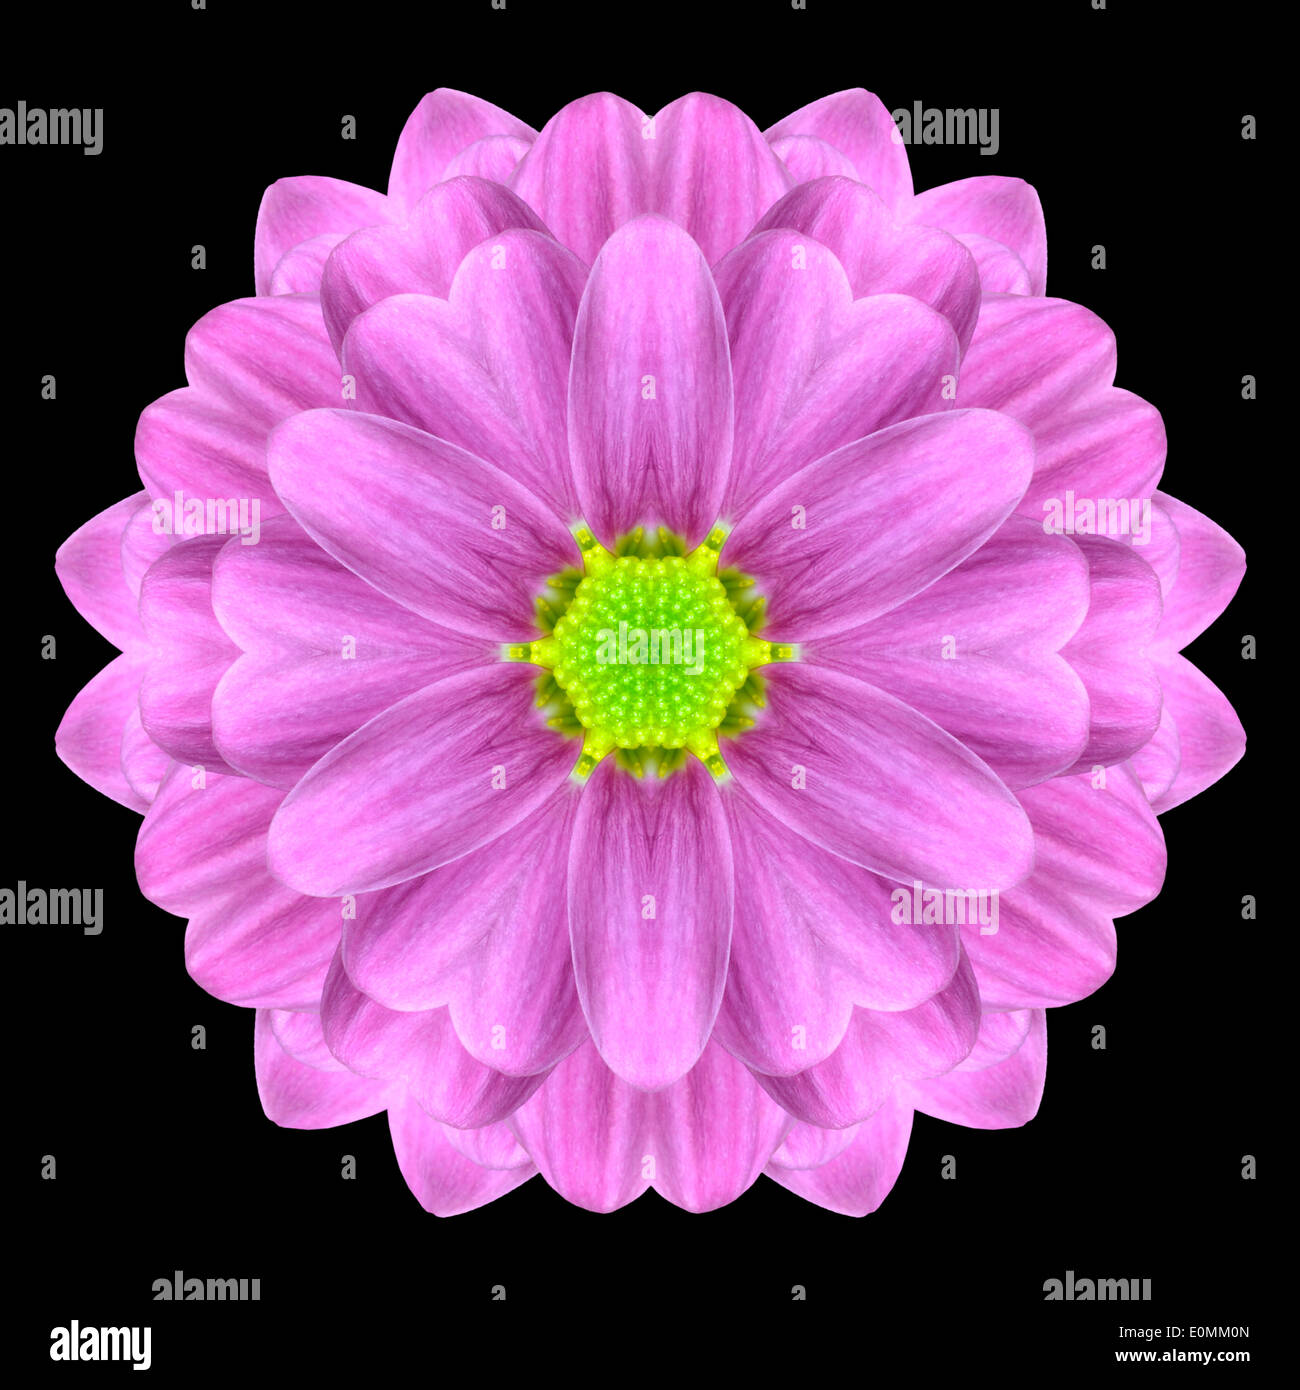 Mandala de fleur rose Daisy avec centre vert. Conception kaléidoscopique isolé sur fond noir Banque D'Images